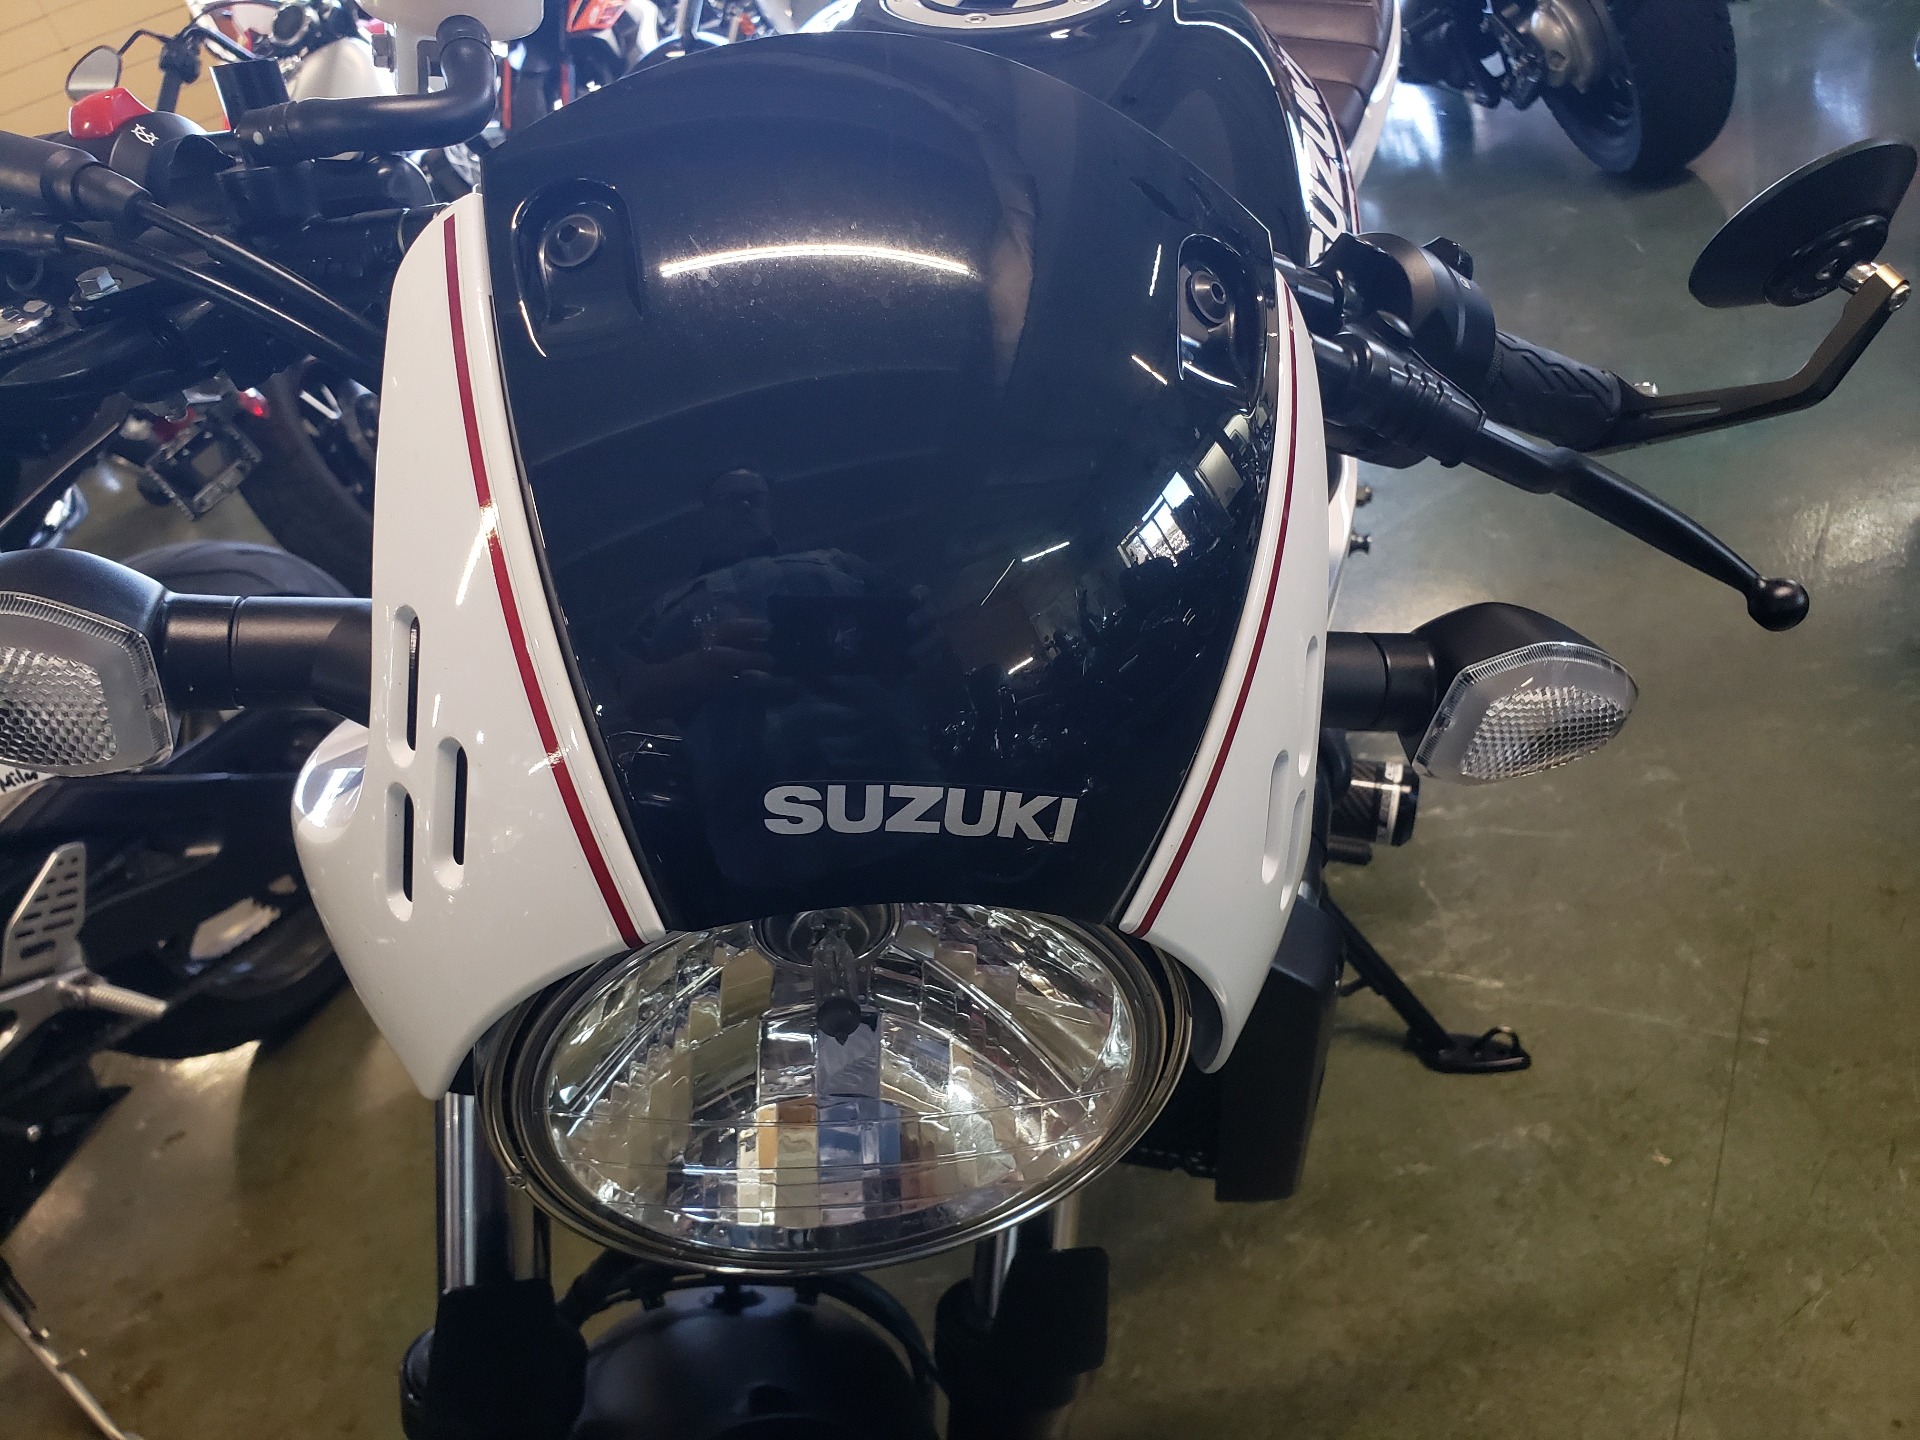 2019 Suzuki SV650X in Louisville, Tennessee - Photo 7